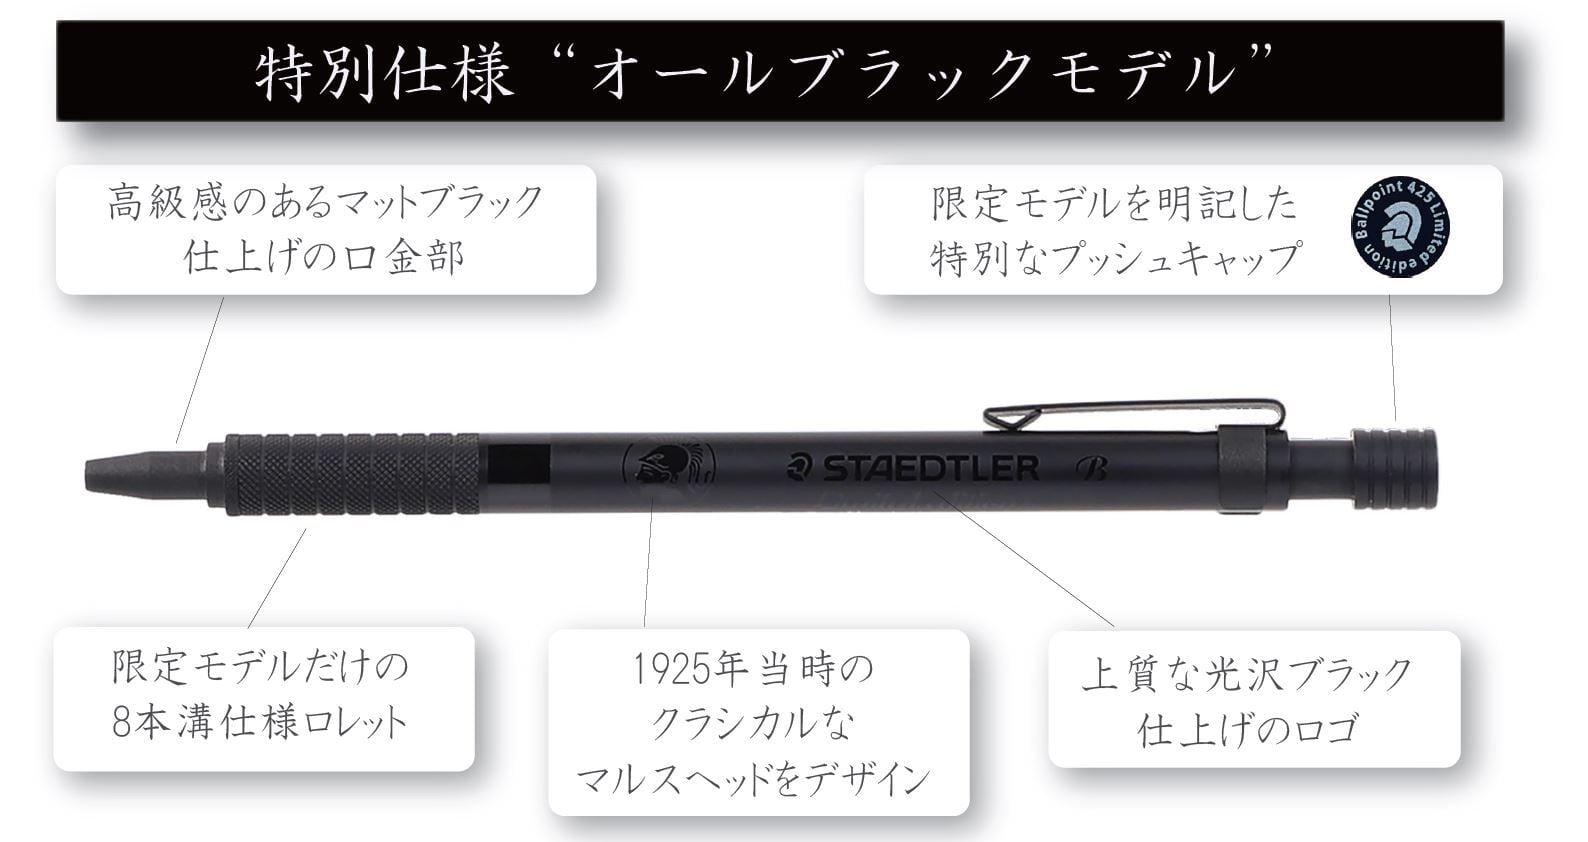 STAEDTLER  ボールペン 限定モデル・オールブラック425 25F9-1